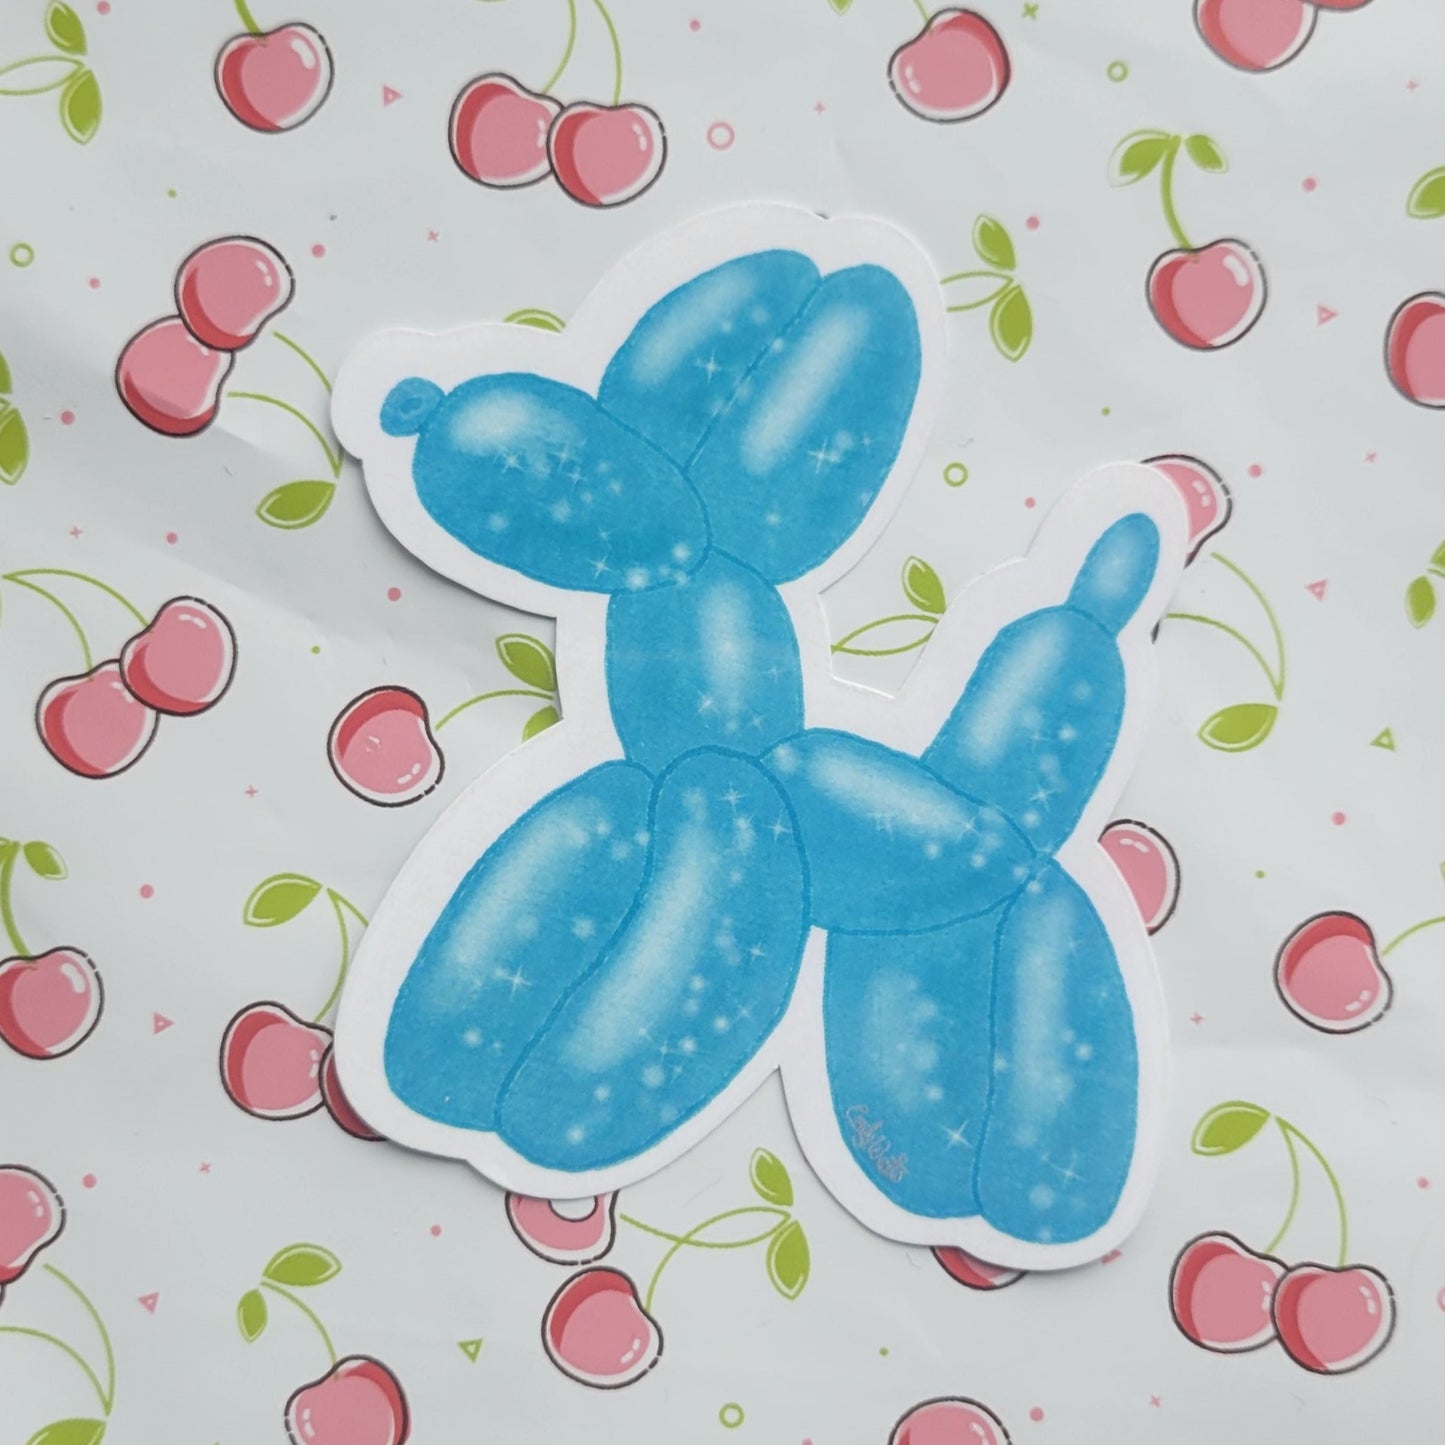 Balloon Animal Jumbo Stickers Set of 2